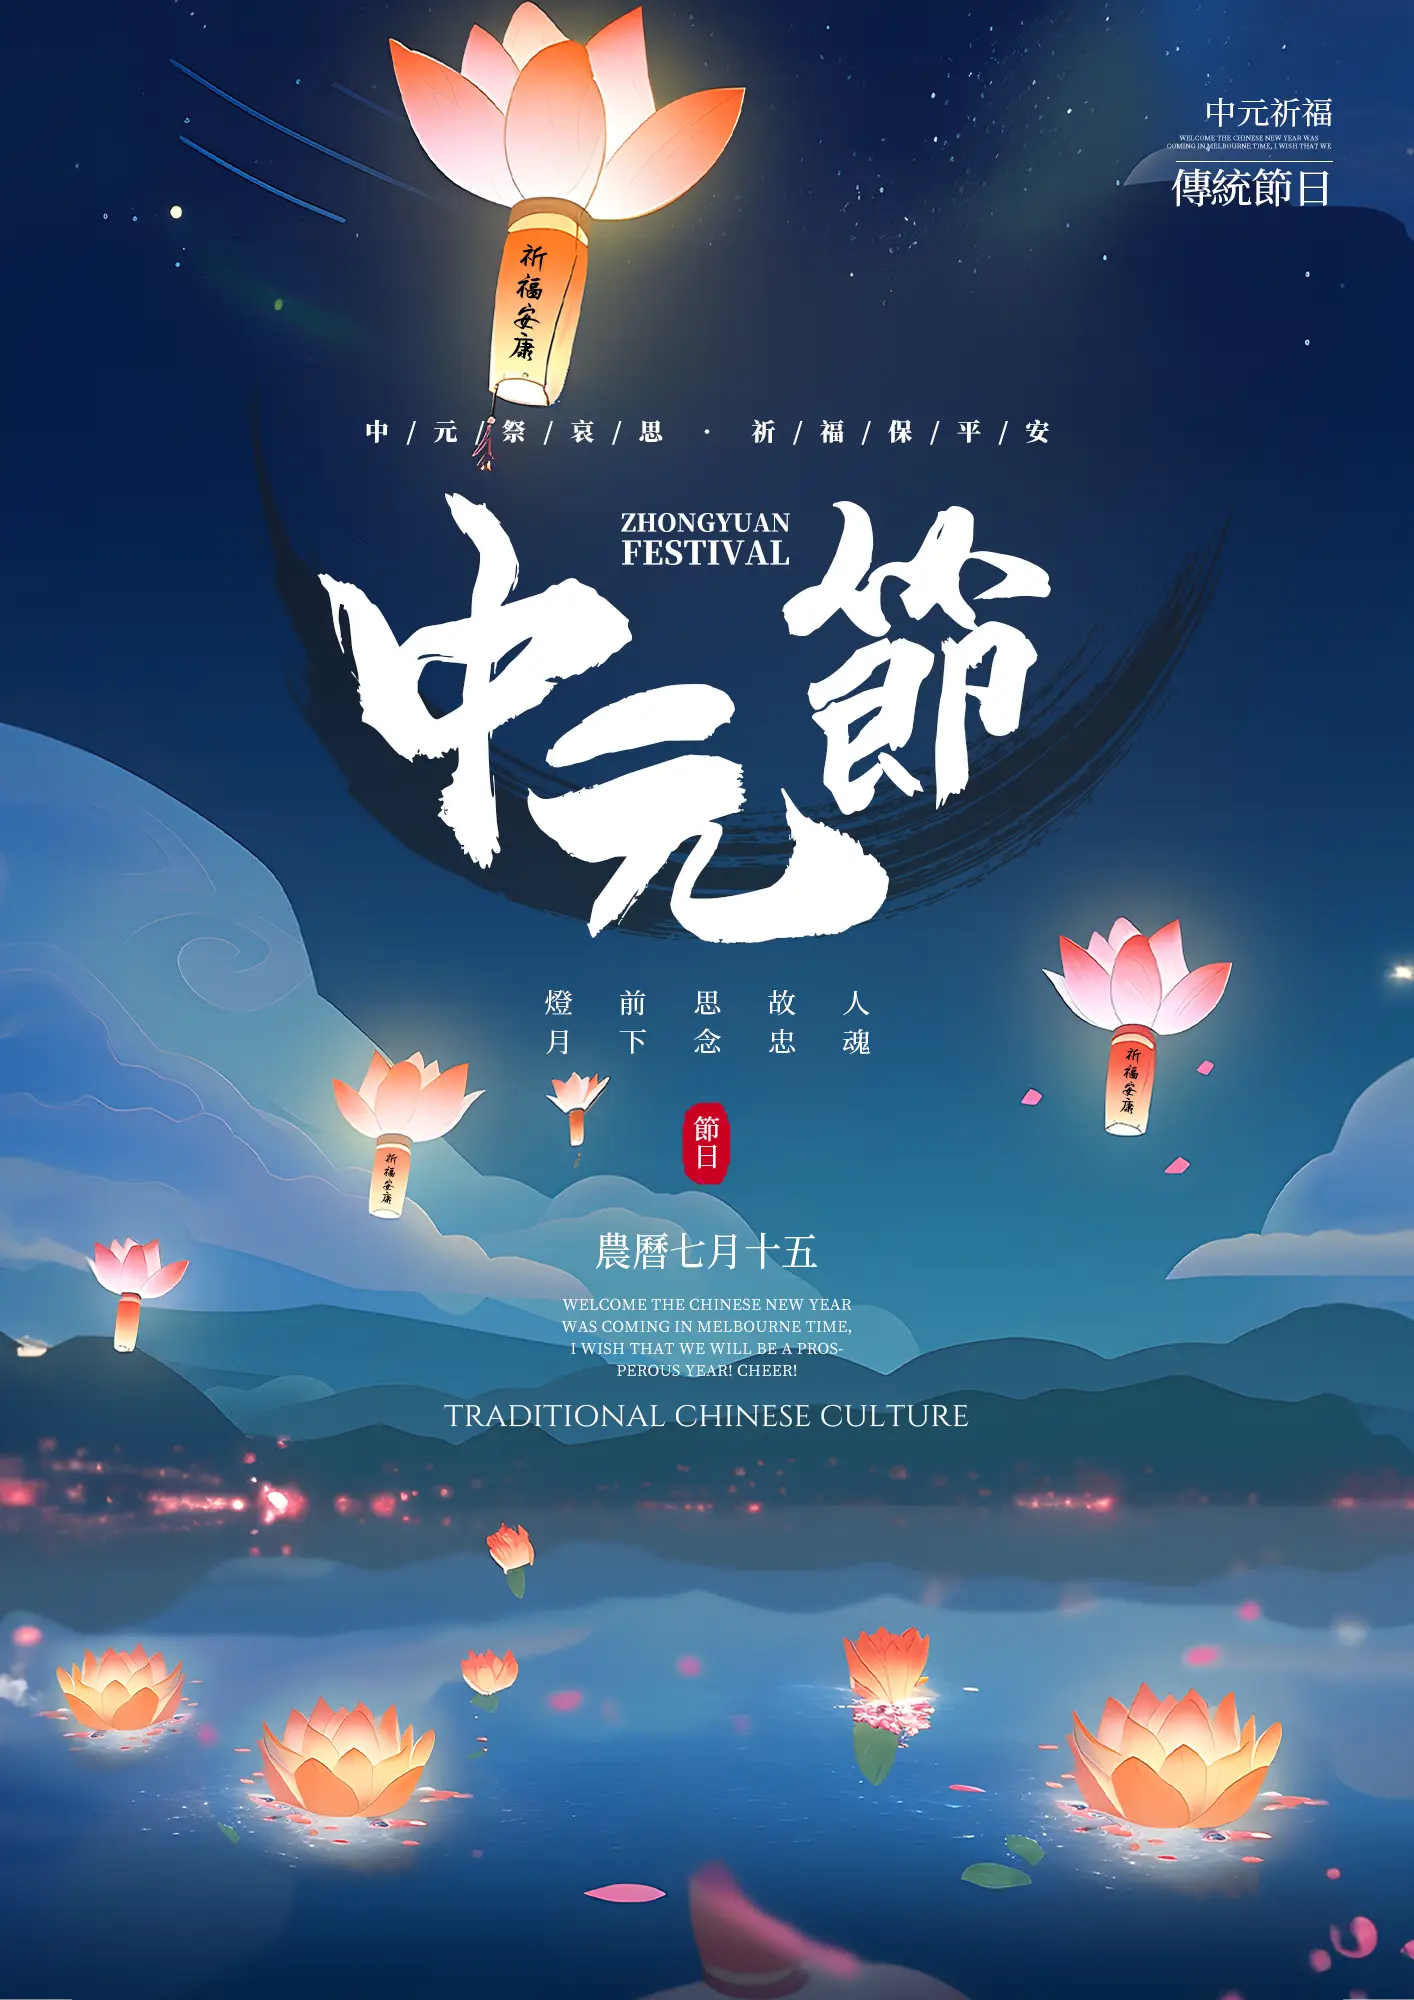 夜晚星空河灯荷花灯笼孔明灯中国传统节日中元节节日海报图片